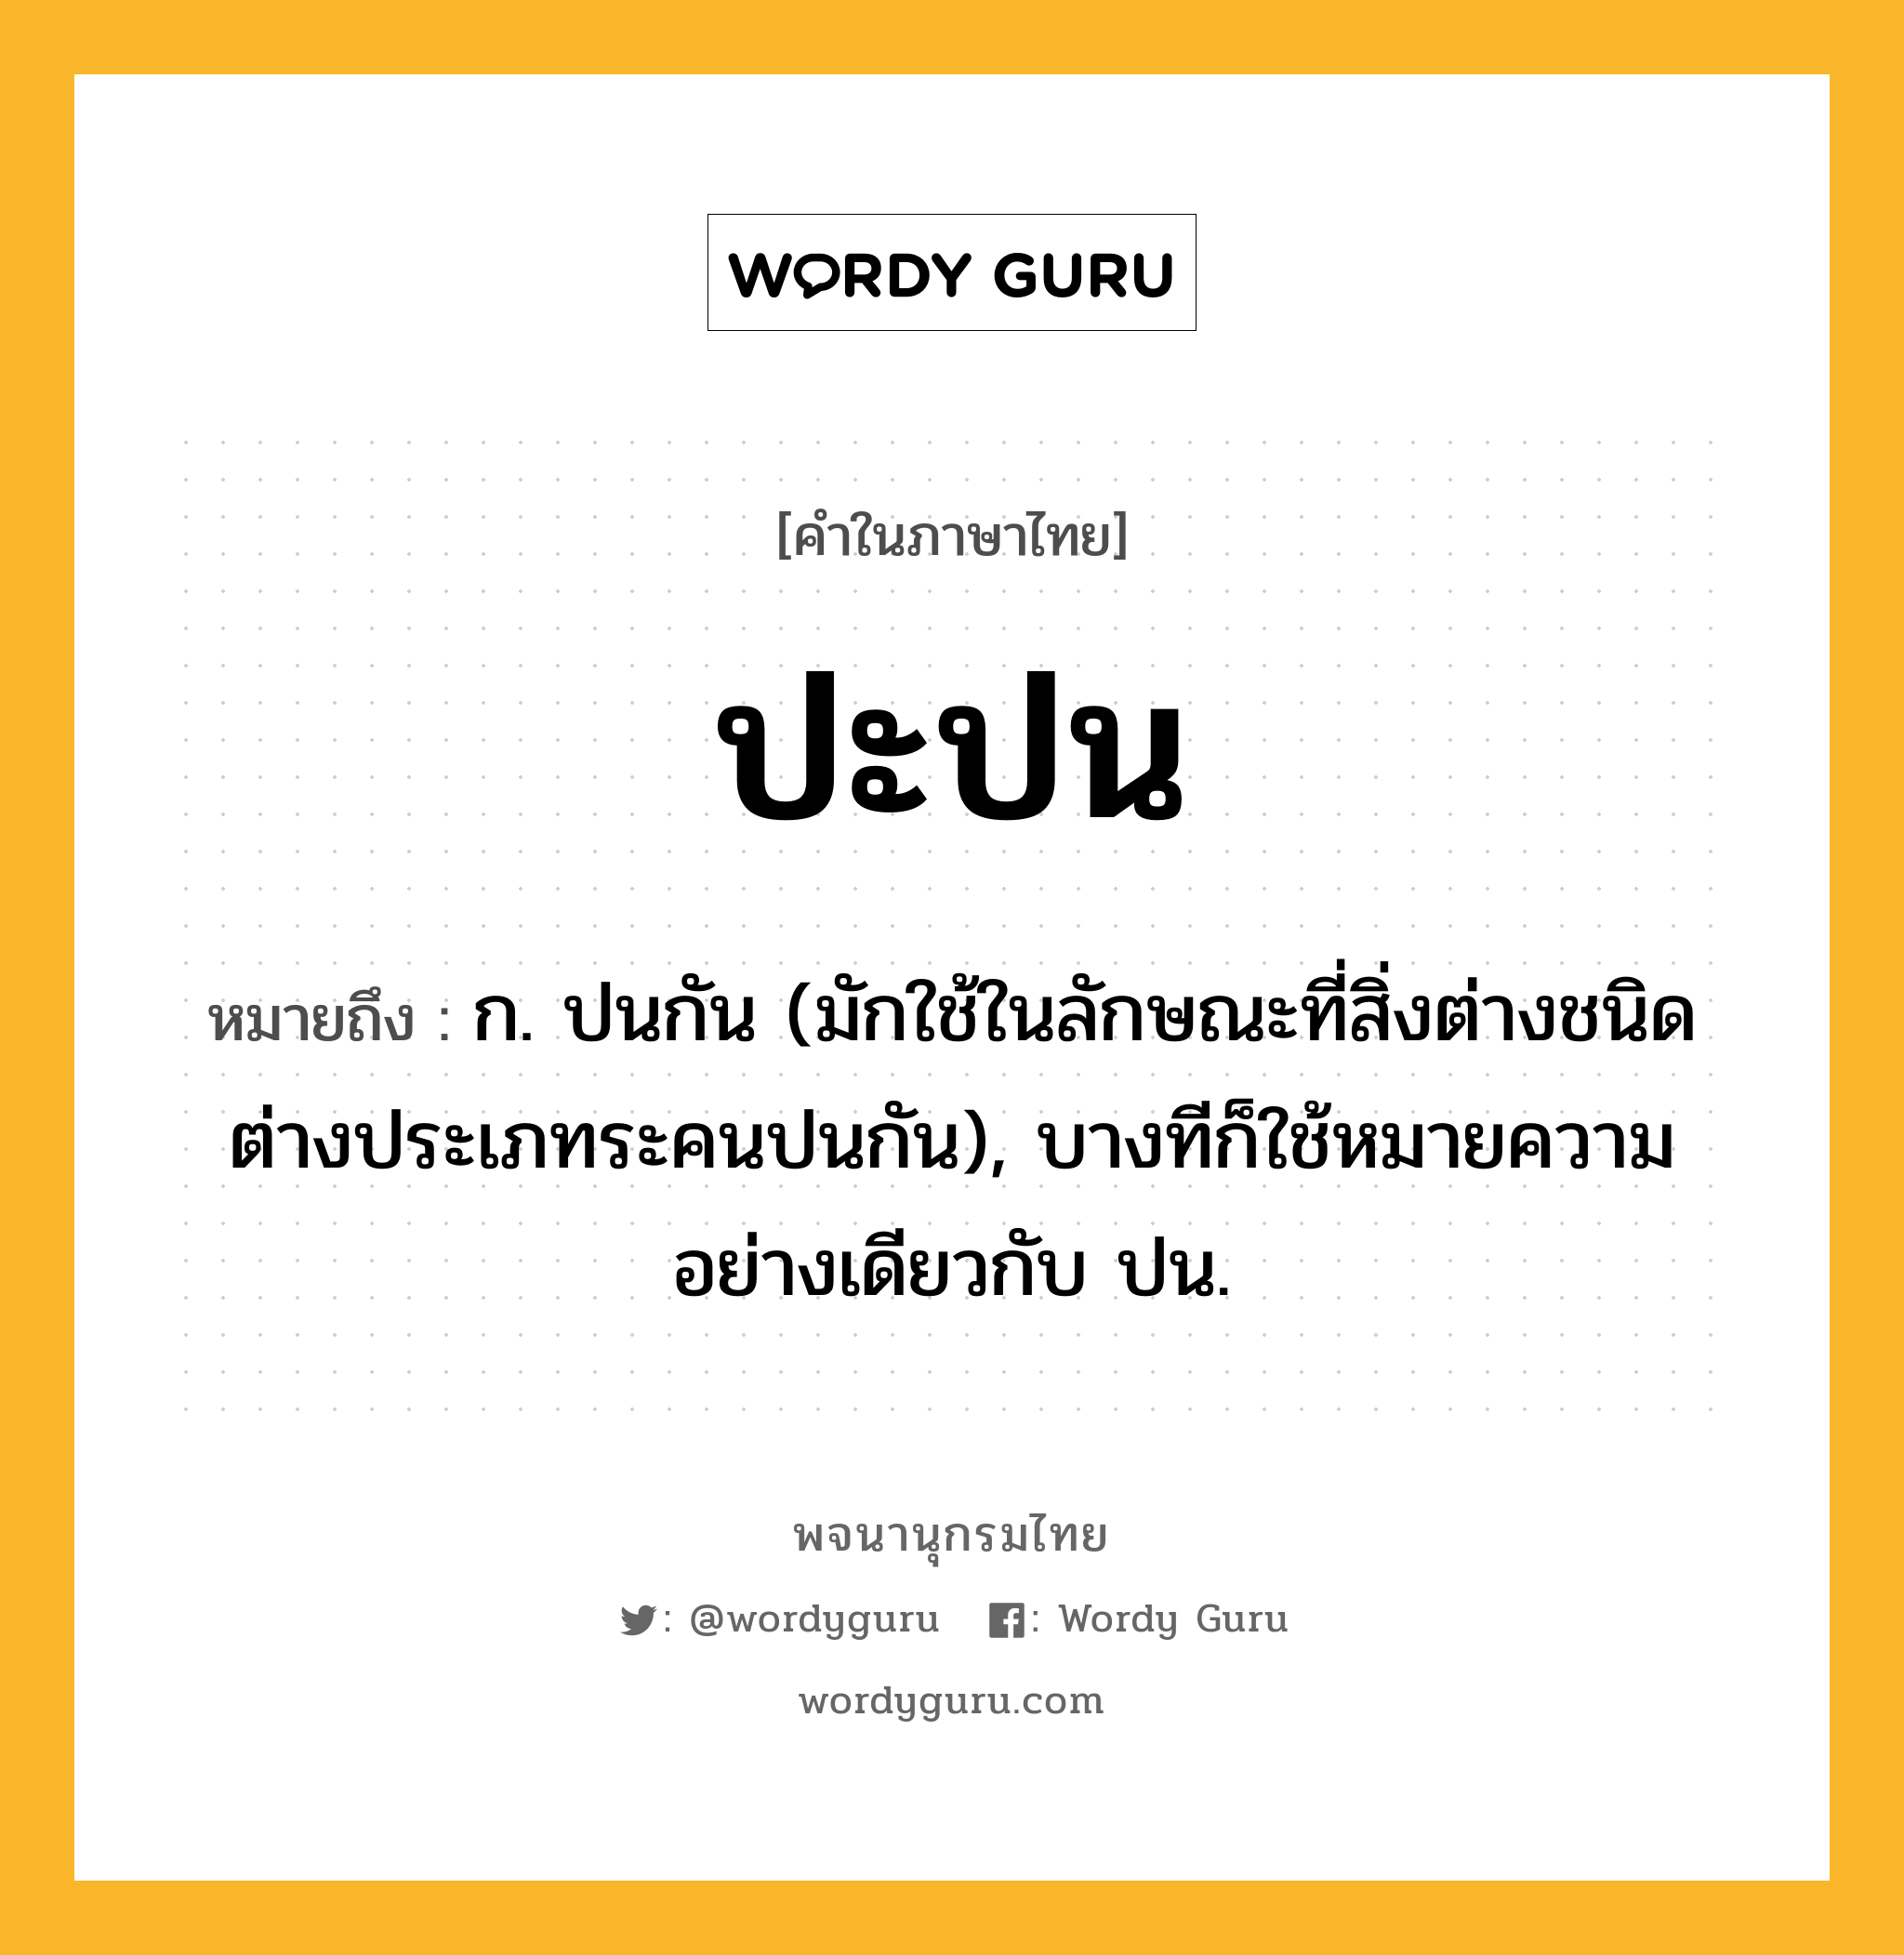 ปะปน หมายถึงอะไร?, คำในภาษาไทย ปะปน หมายถึง ก. ปนกัน (มักใช้ในลักษณะที่สิ่งต่างชนิดต่างประเภทระคนปนกัน), บางทีก็ใช้หมายความอย่างเดียวกับ ปน.